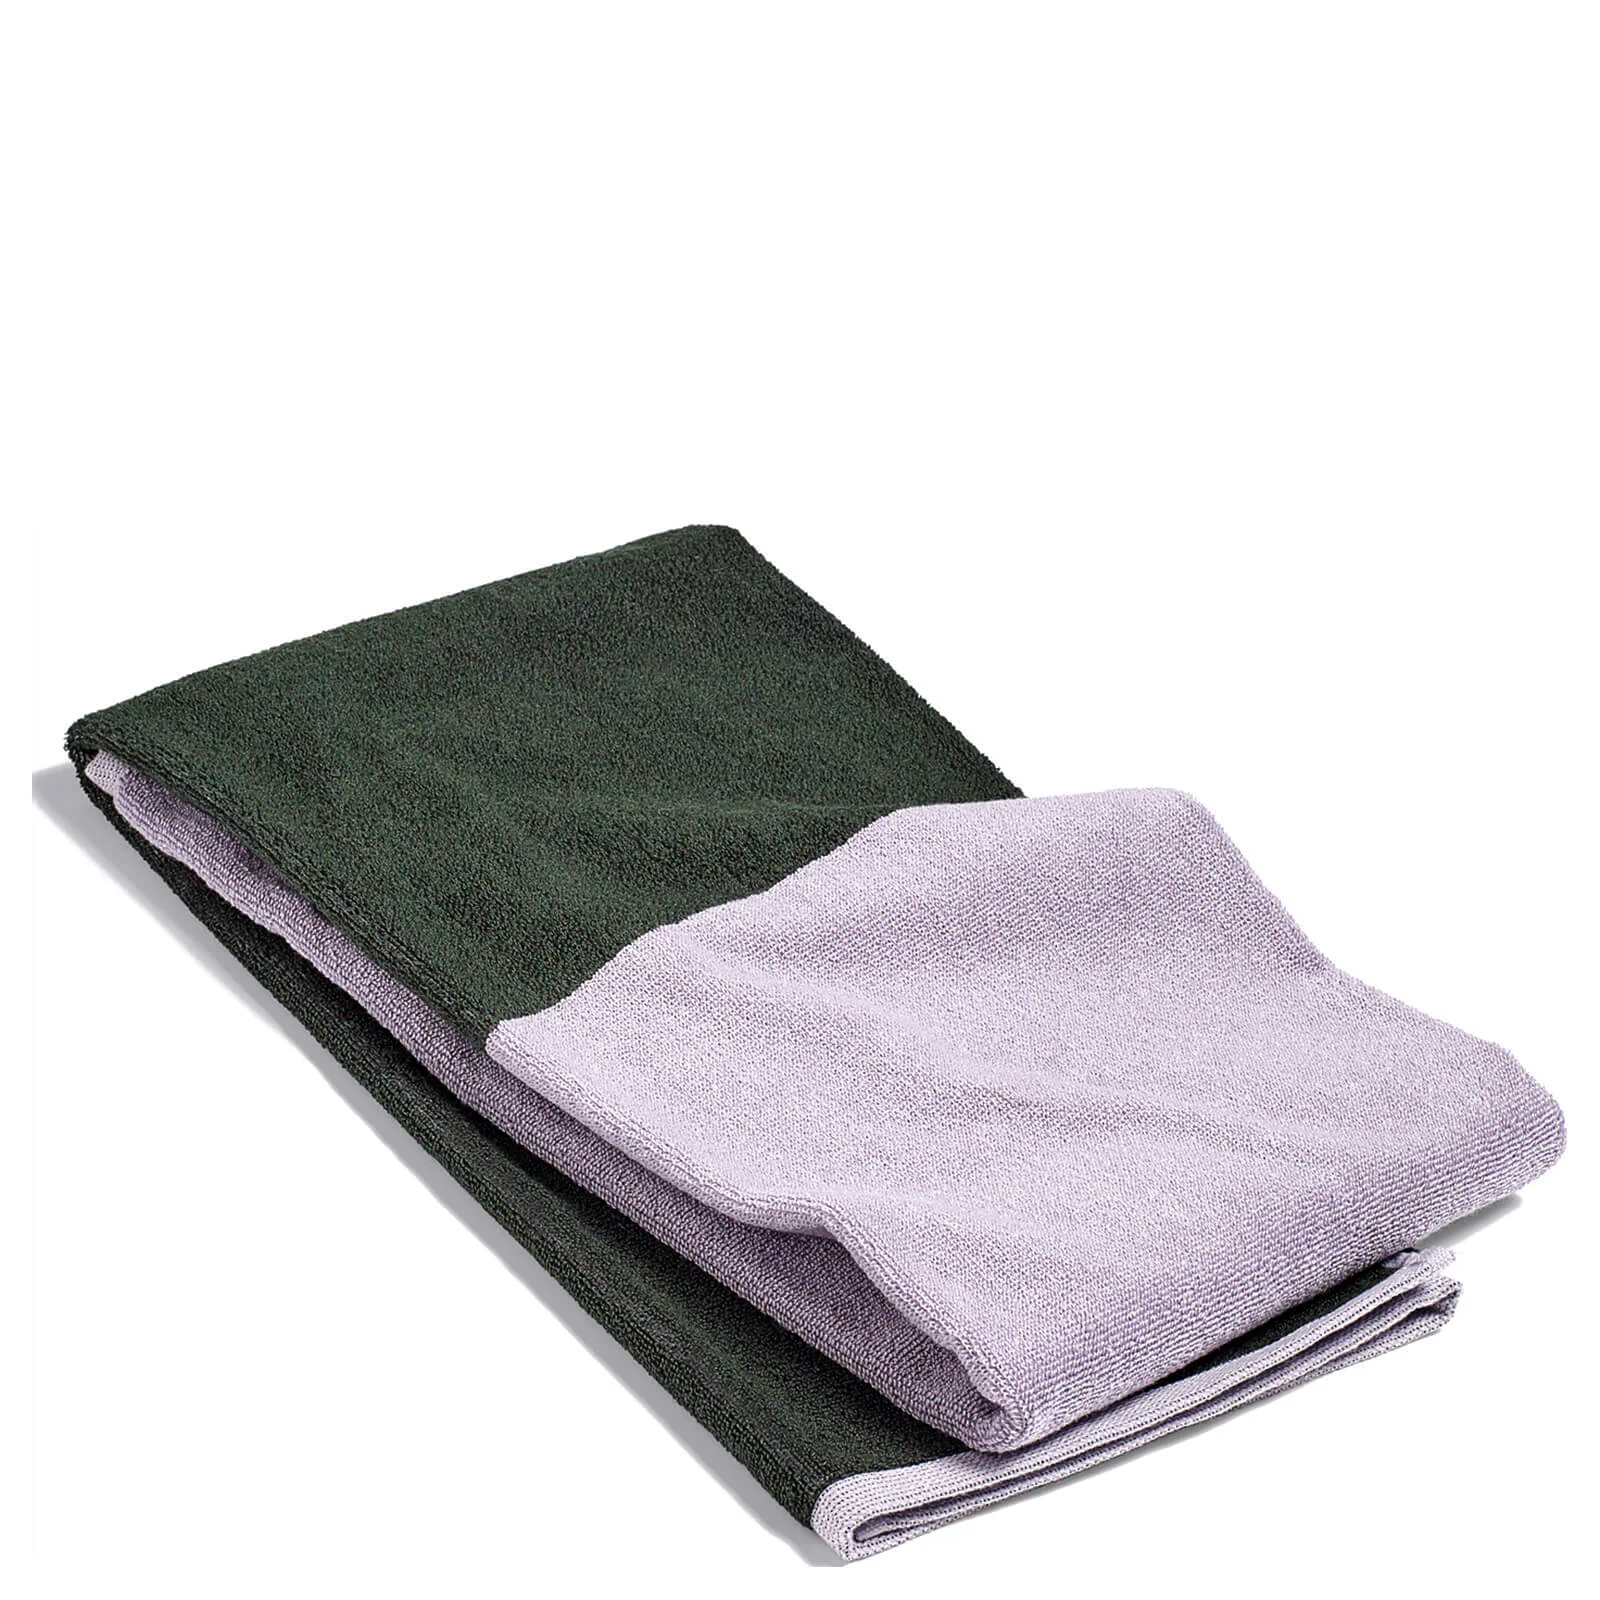 HAY Compose Bath Towel - Green Image 1